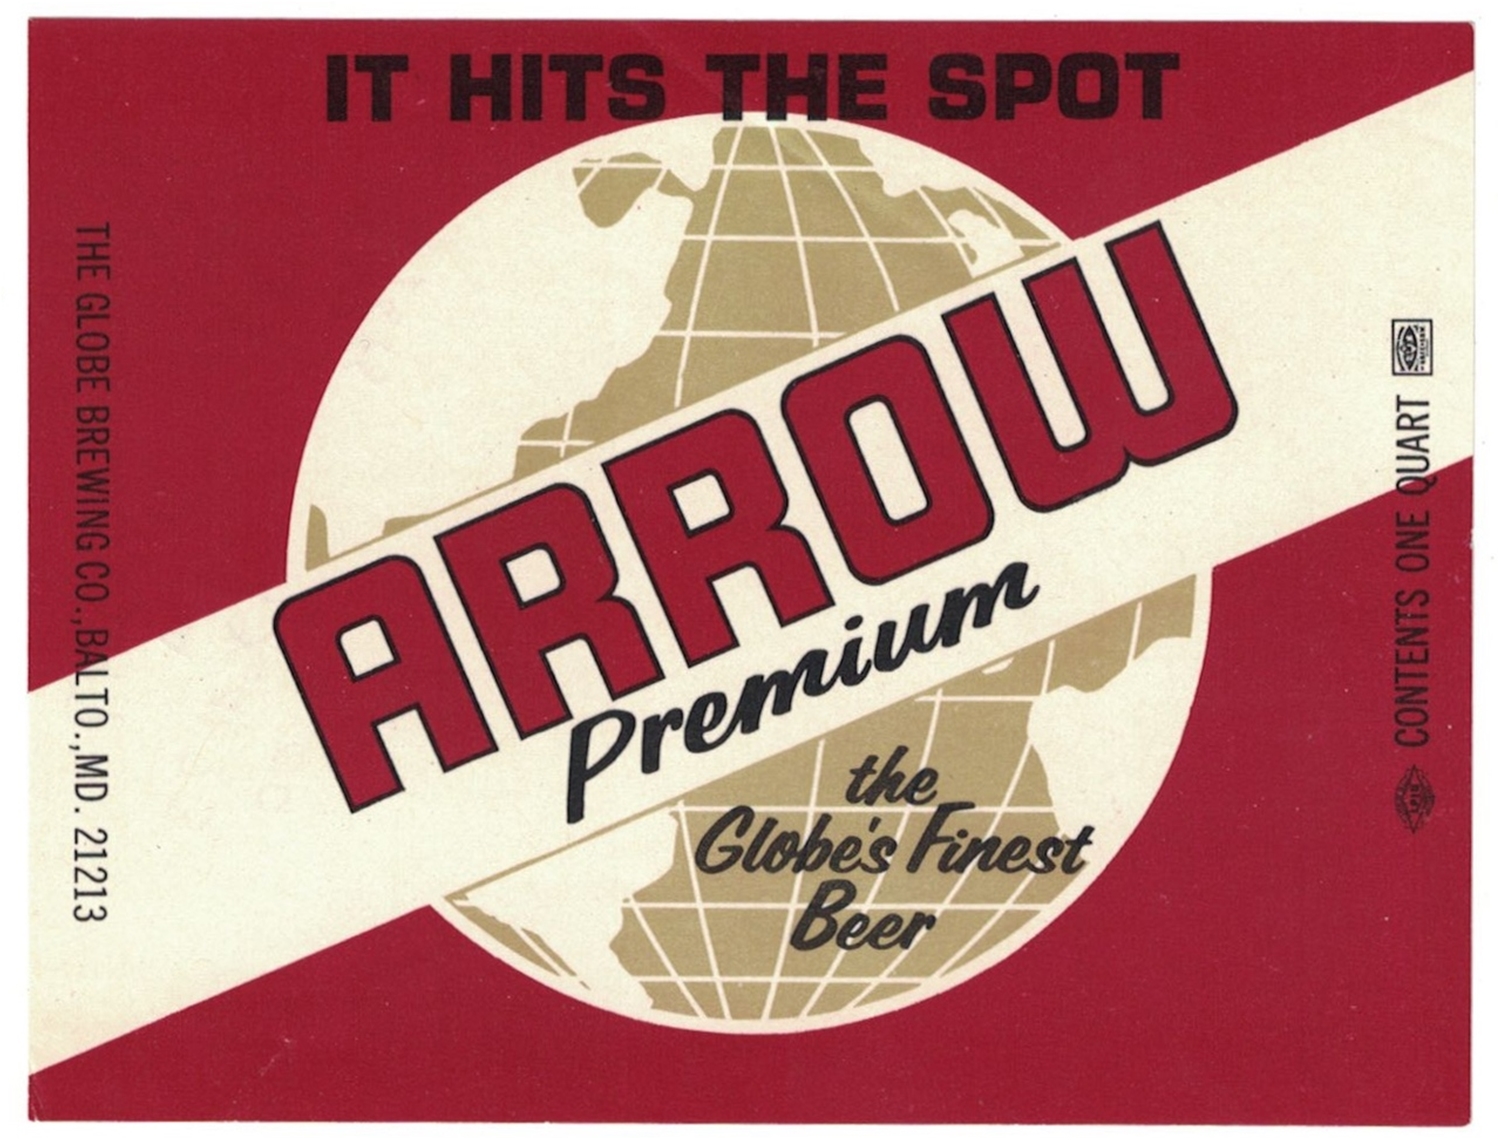 Arrow Premium Beer Label